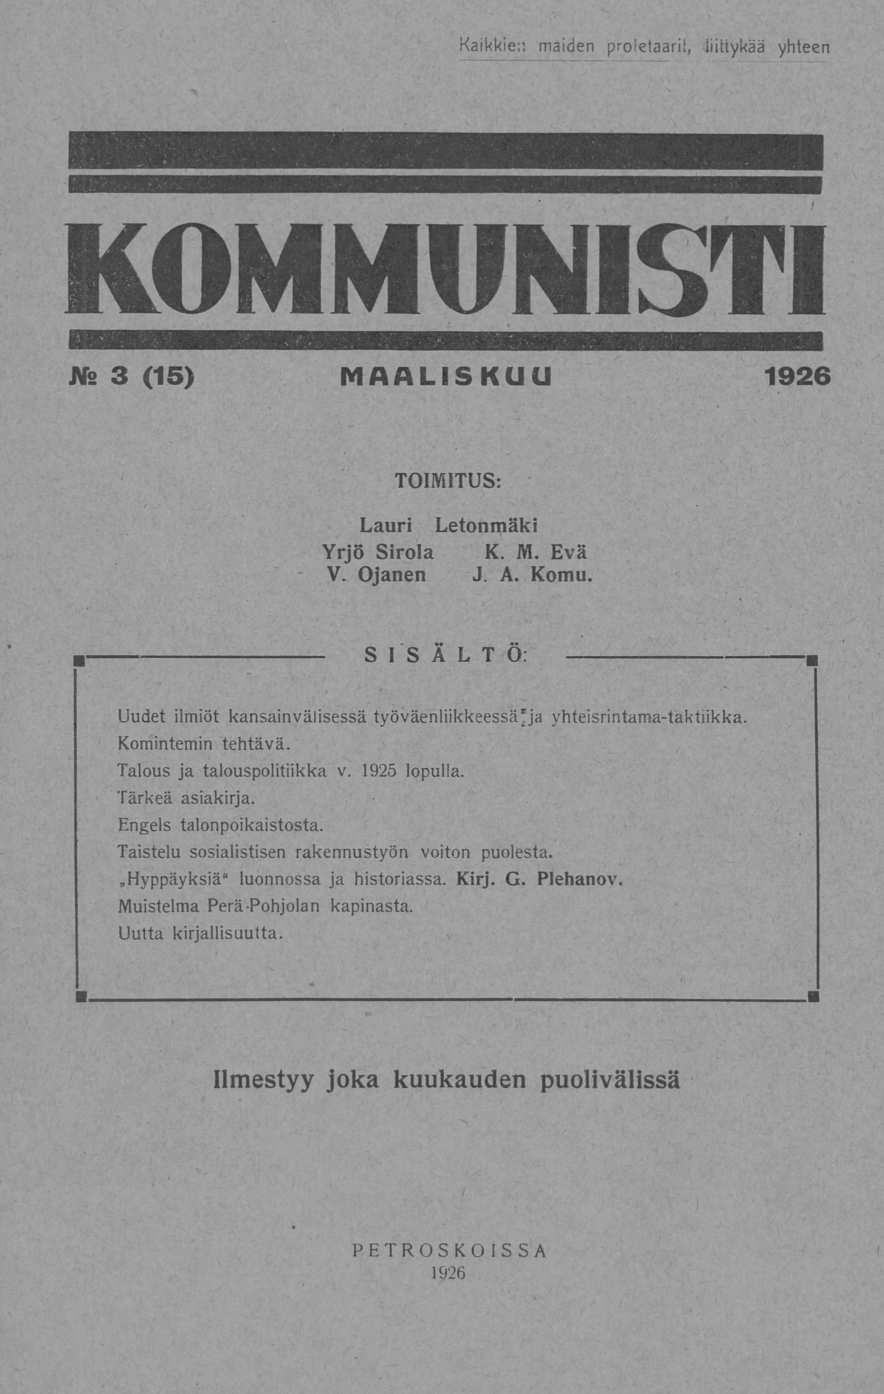 Kaikkien maiden proletaari!, liittykää yhteen Ns 3 (15) MAALISKUU 1926 TOIMITUS: Lauri Letonmäki Yrjö Sirola K. M. Evä V. Ojanen J. A. Kontu.